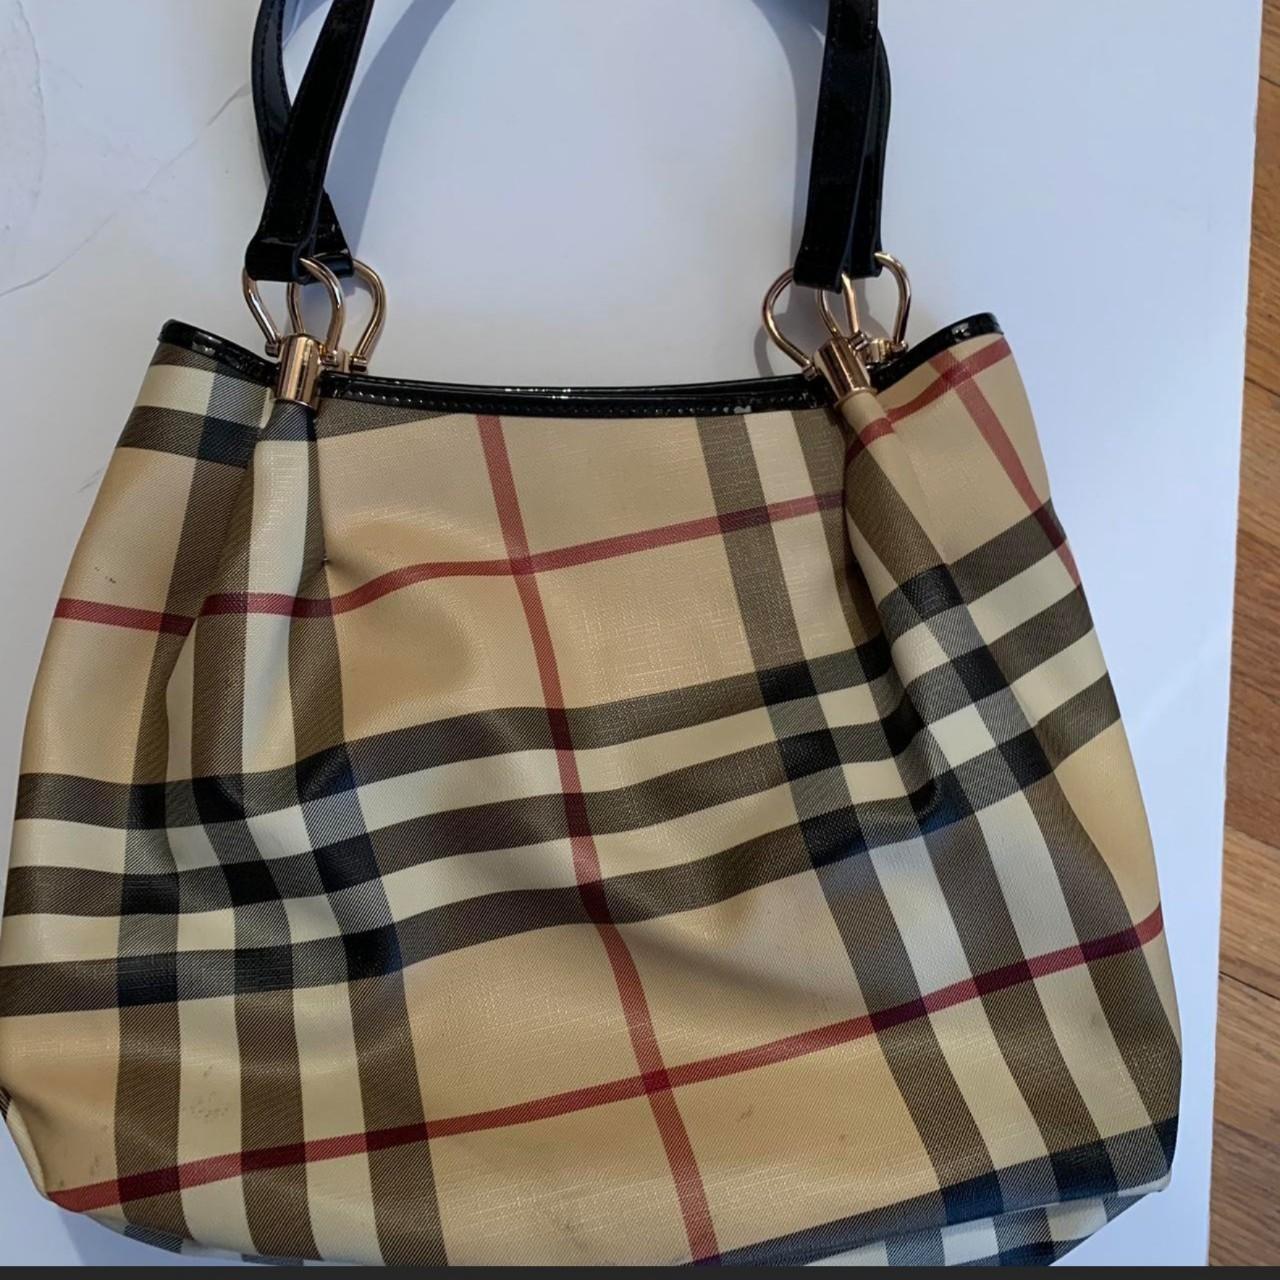 Burberry Newbury Nova Check Sling Bag - Beyond the Rack $399.99  http://www.beyondtherack.com/member/invite/NAC41086F5B | Bags, Burberry  bag, Burberry handbags